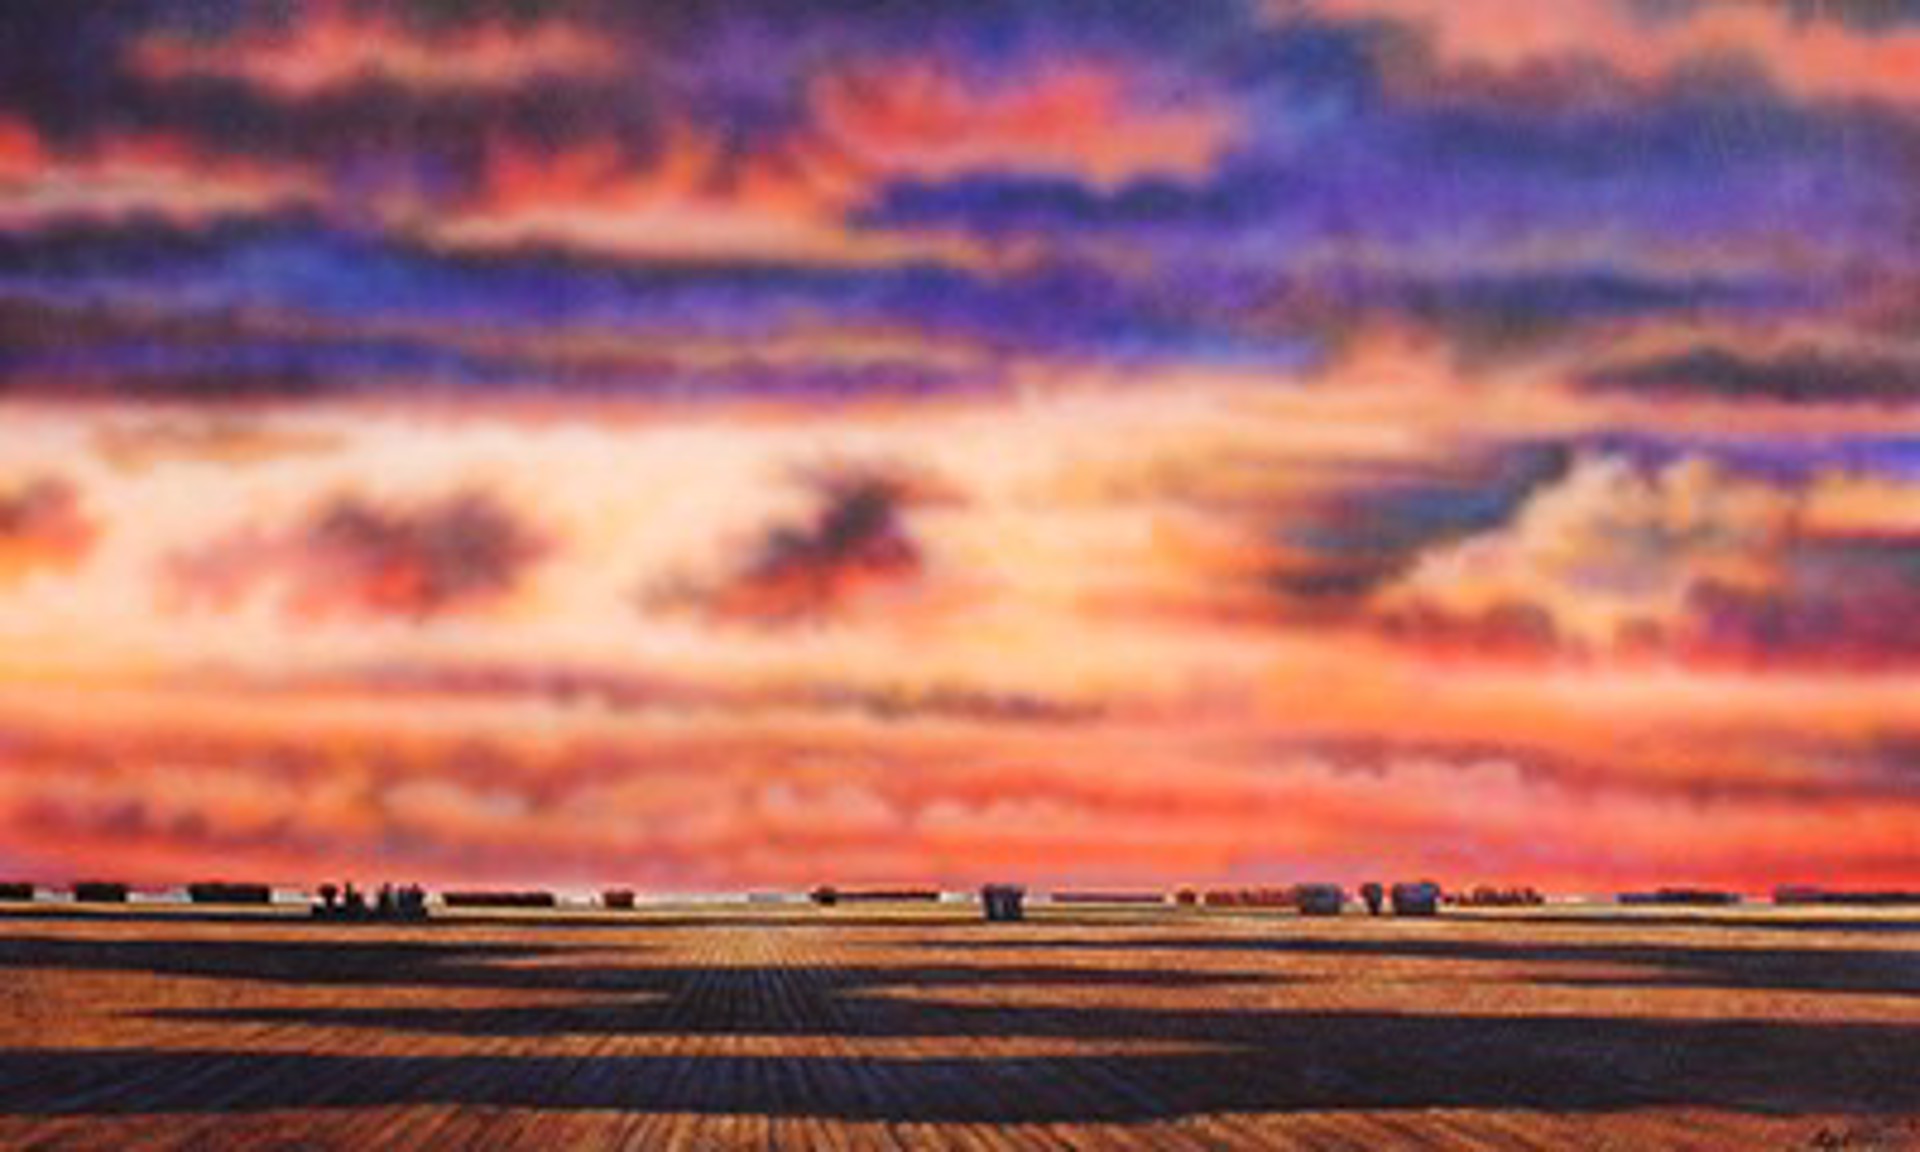 Sunset by Steve Tracy